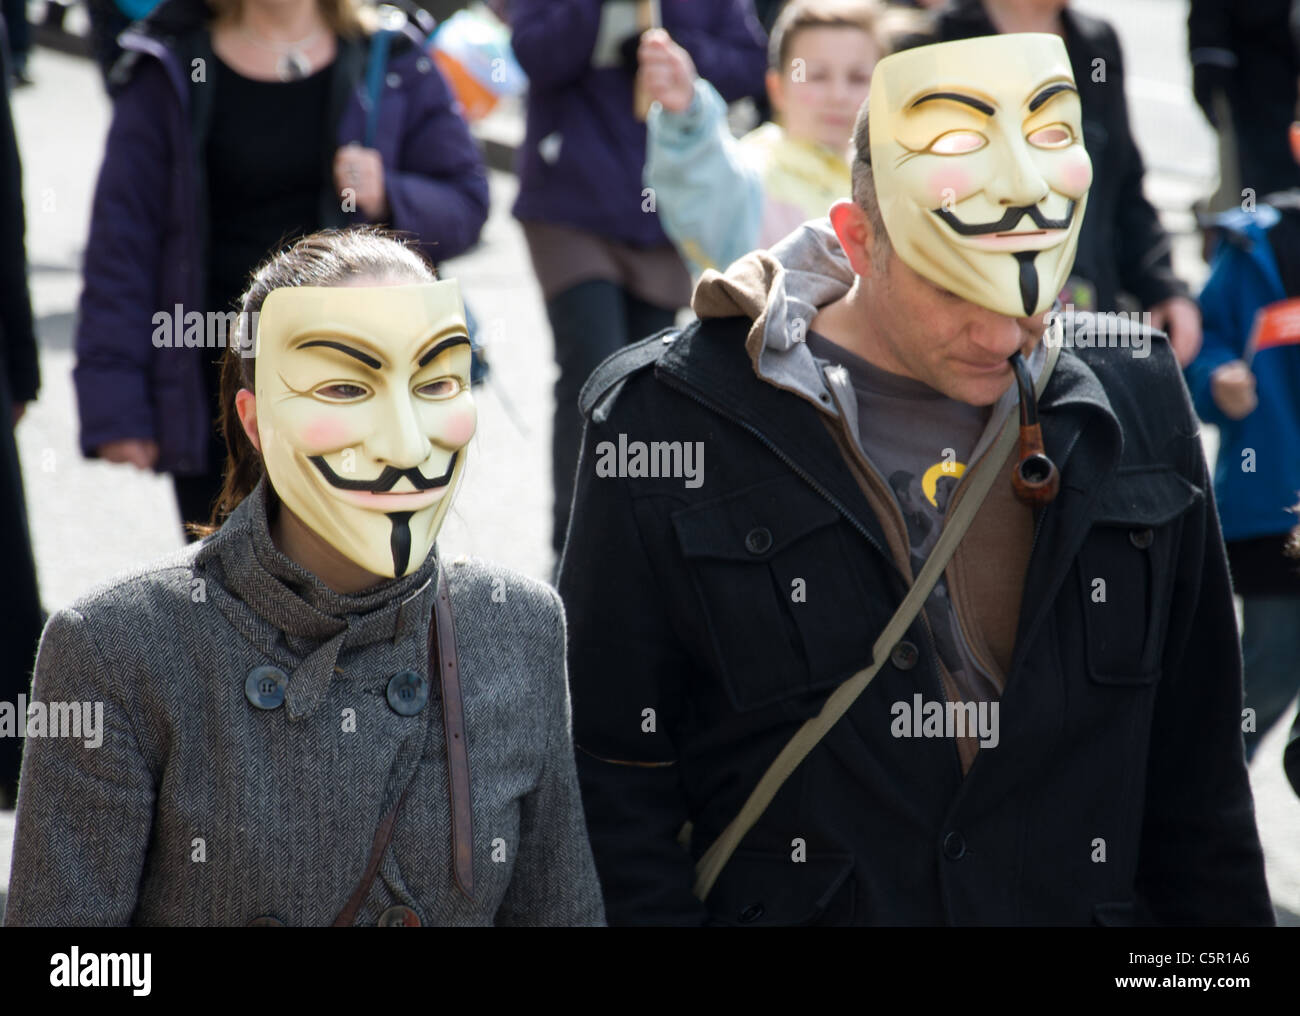 Masque V pour Vendetta sur marcheurs de 2 G20 mars à Londres le 28 mars 2009 Banque D'Images